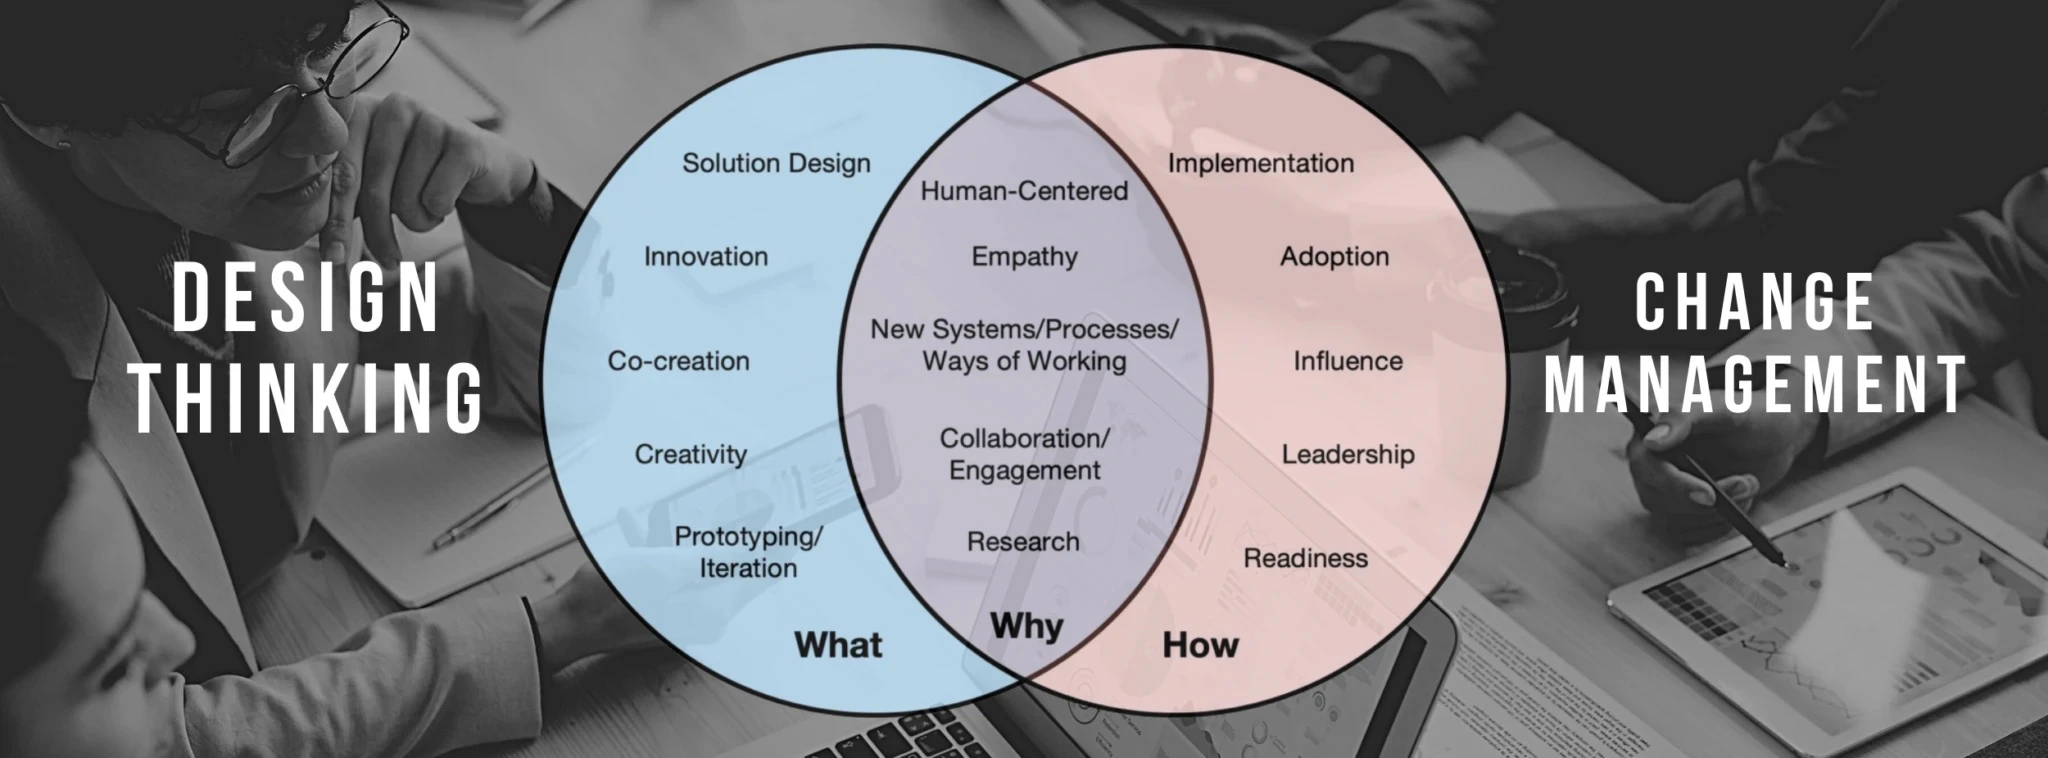 Design Thinking versus Change Management